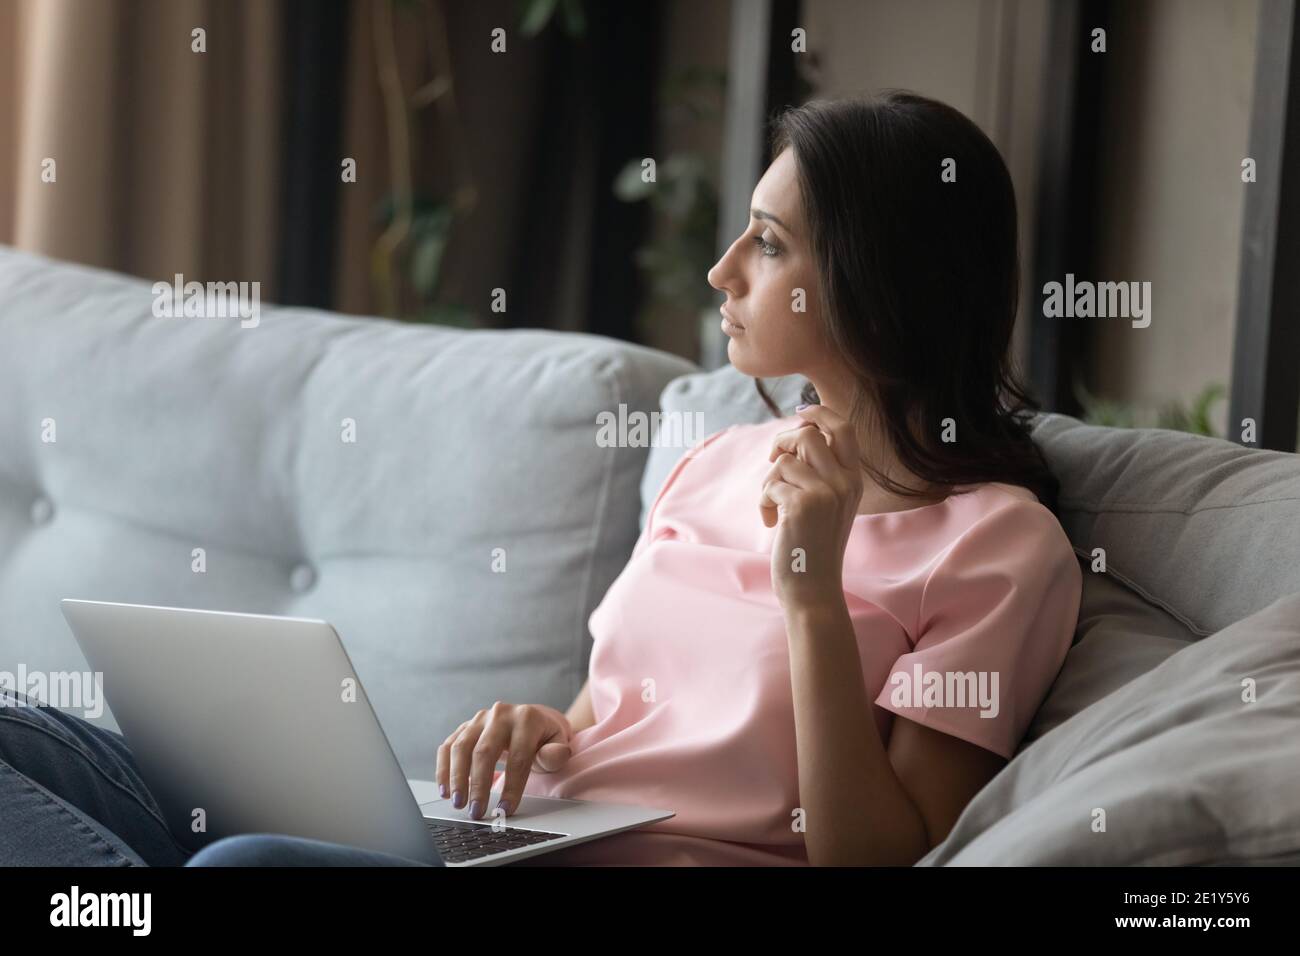 Une femme pensive travaille sur un ordinateur portable à la maison Banque D'Images